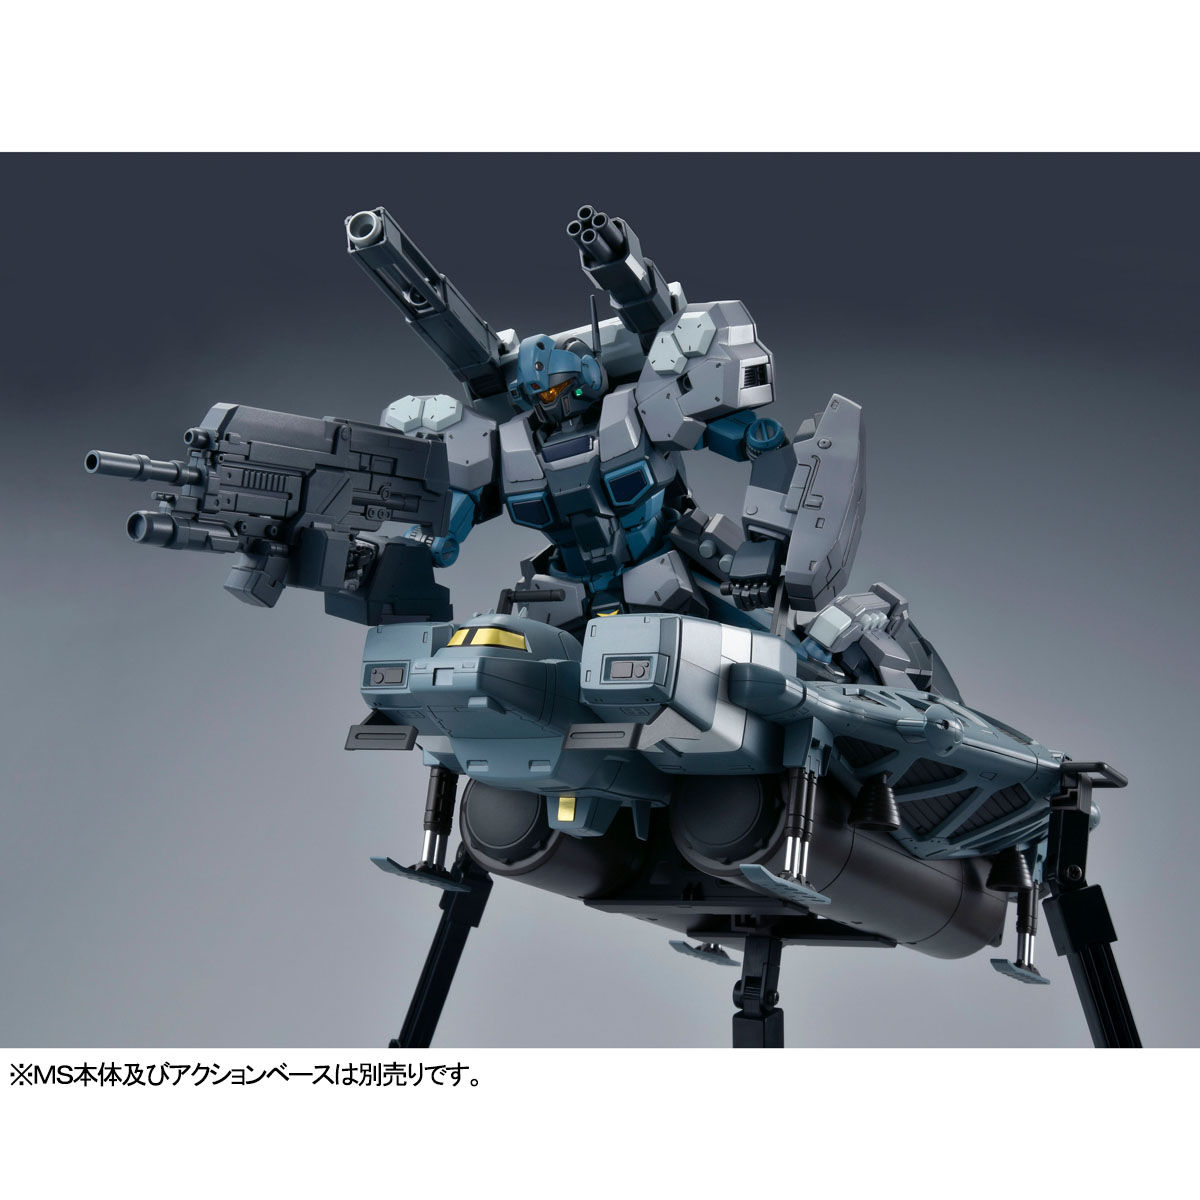 RE/100 『機動戦士ガンダムUC』 1/100 89式ベース・ジャバー(ユニコーンVer.) プラモデル